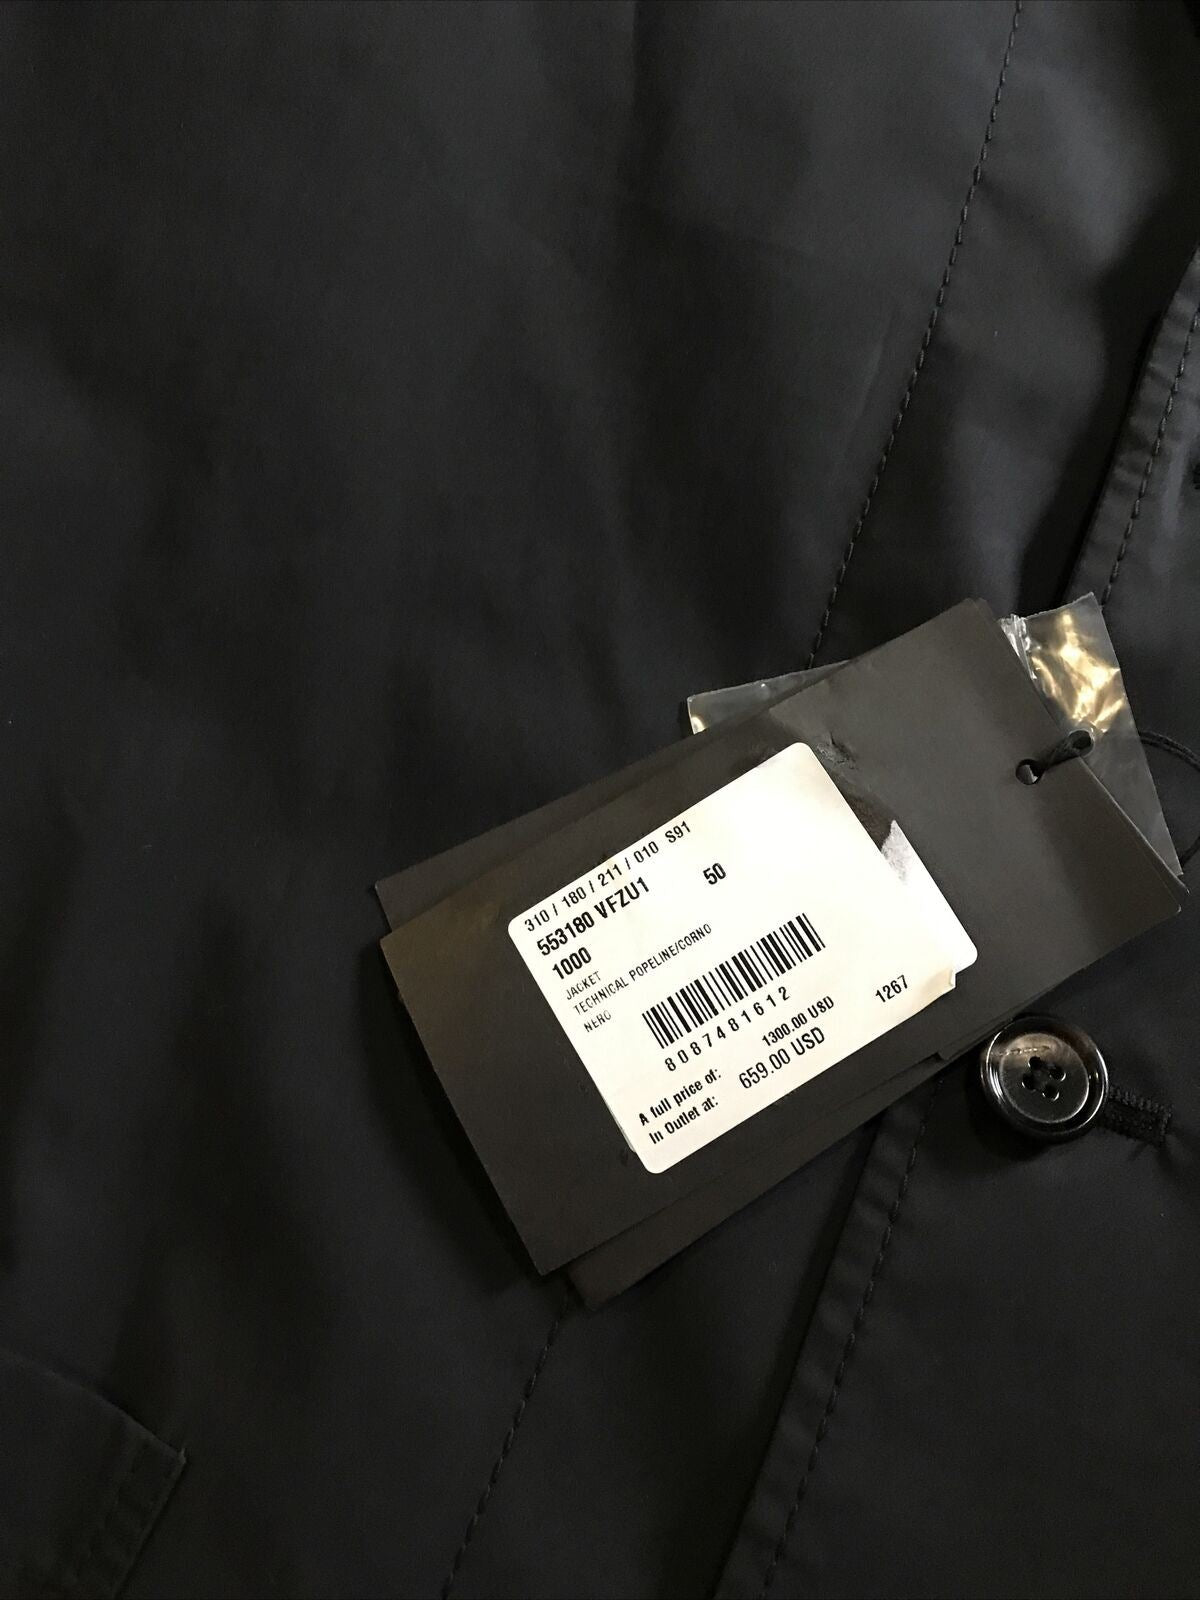 Новый мужской пиджак Bottega Veneta за 1300 долларов, черный 40 США (50 ЕС) Италия